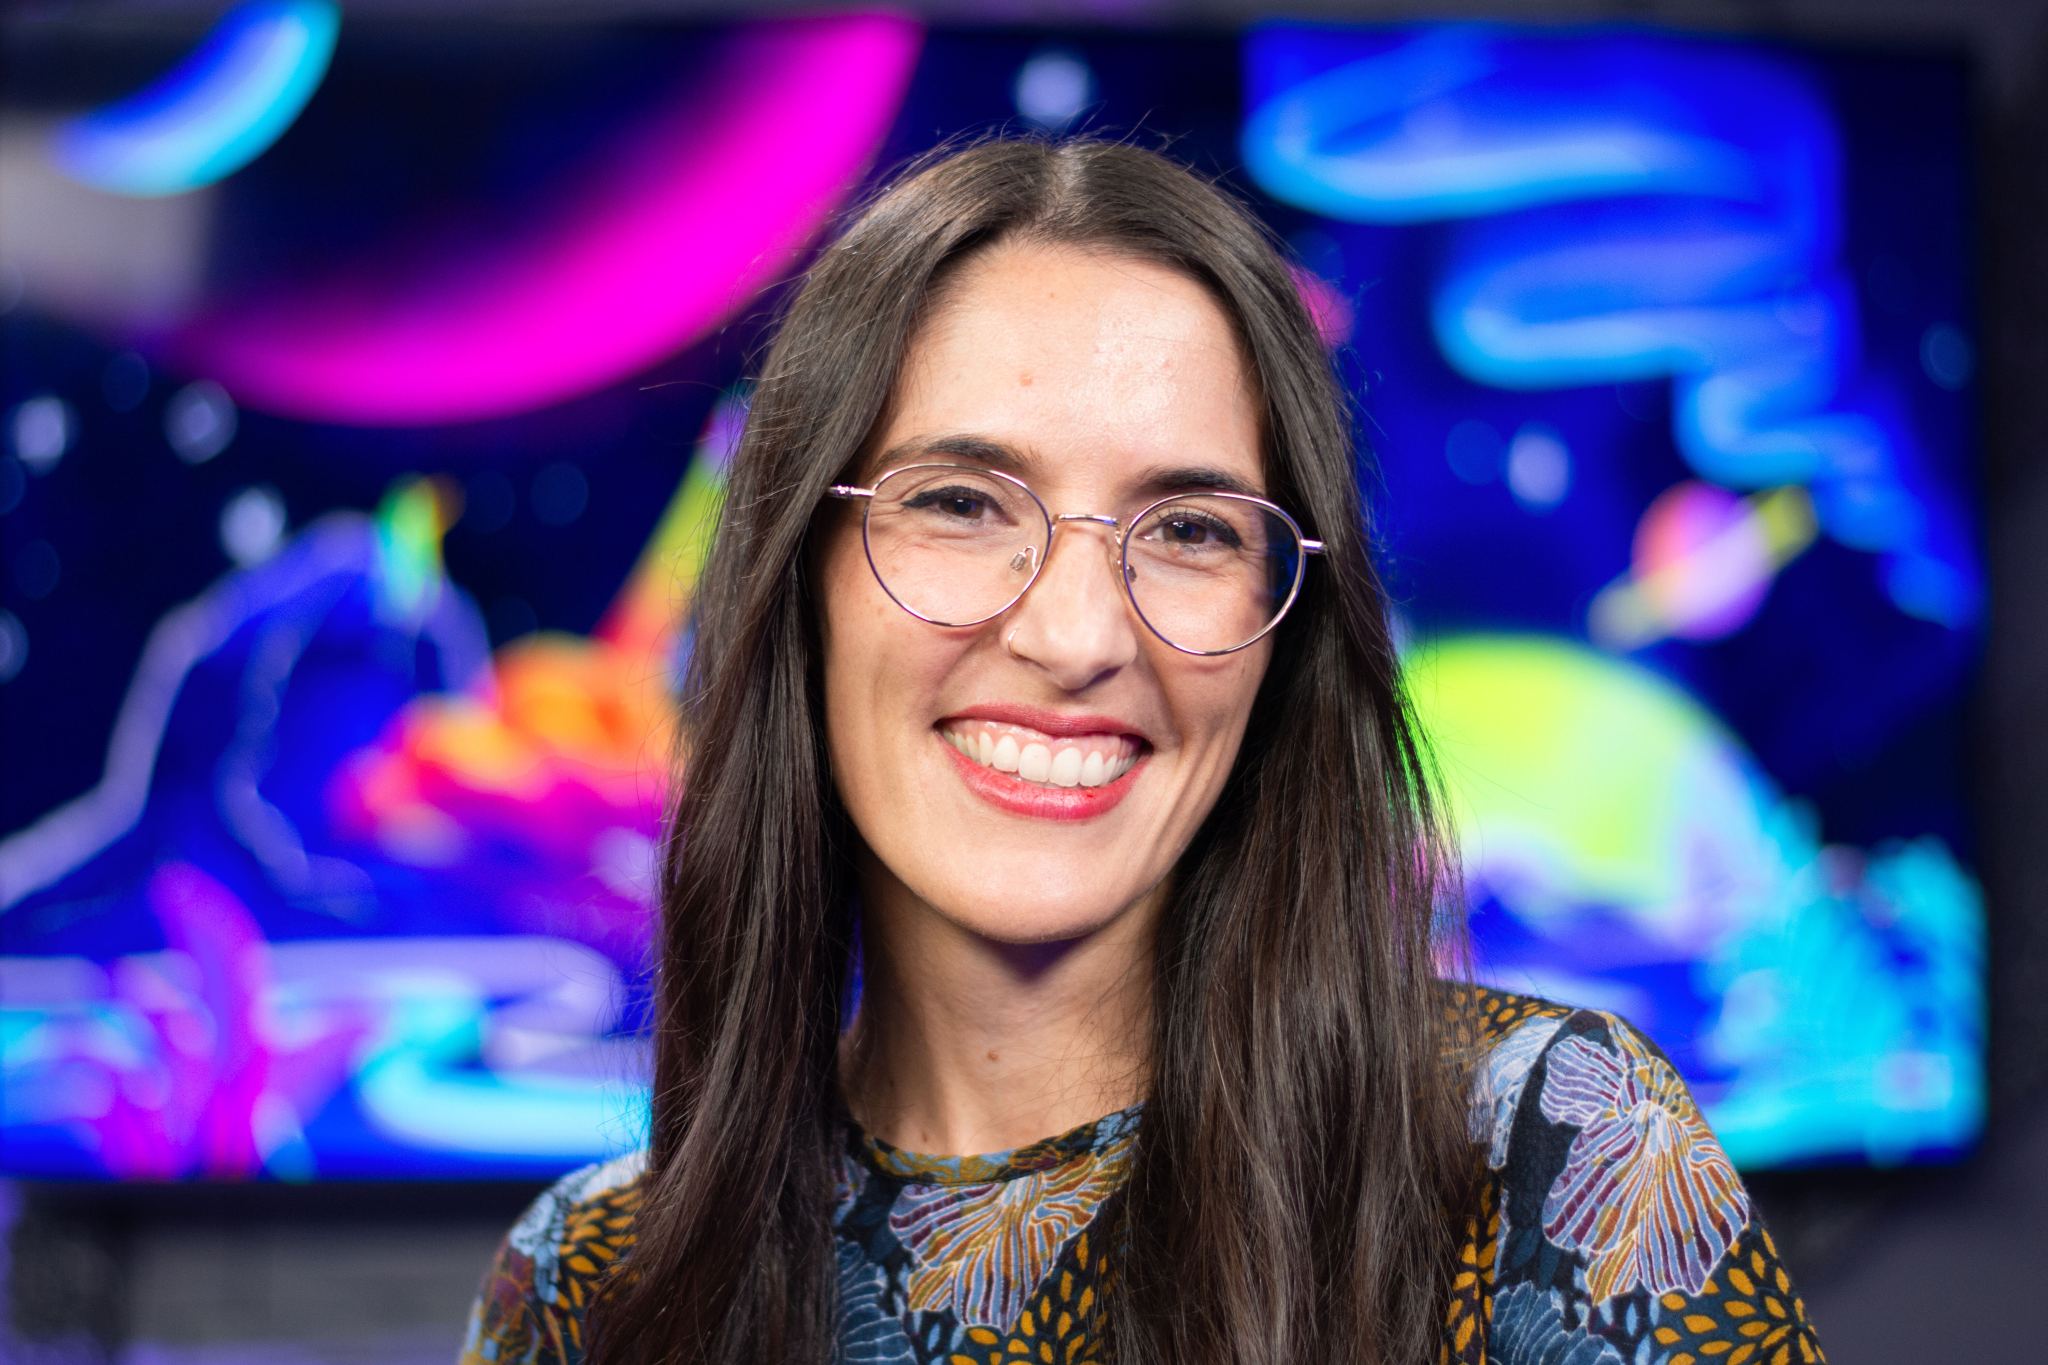 Noelia González sonríe ampliamente en el centro de la imagen. Lleva unos grandes anteojos redondos y una blusa con estampado de flores azules y naranjas, y su pelo castaño oscuro le enmarca la cara. Detrás de ella hay una ilustración de colores brillantes de "Universo curioso de la NASA", el primer pódcast en español de la NASA.